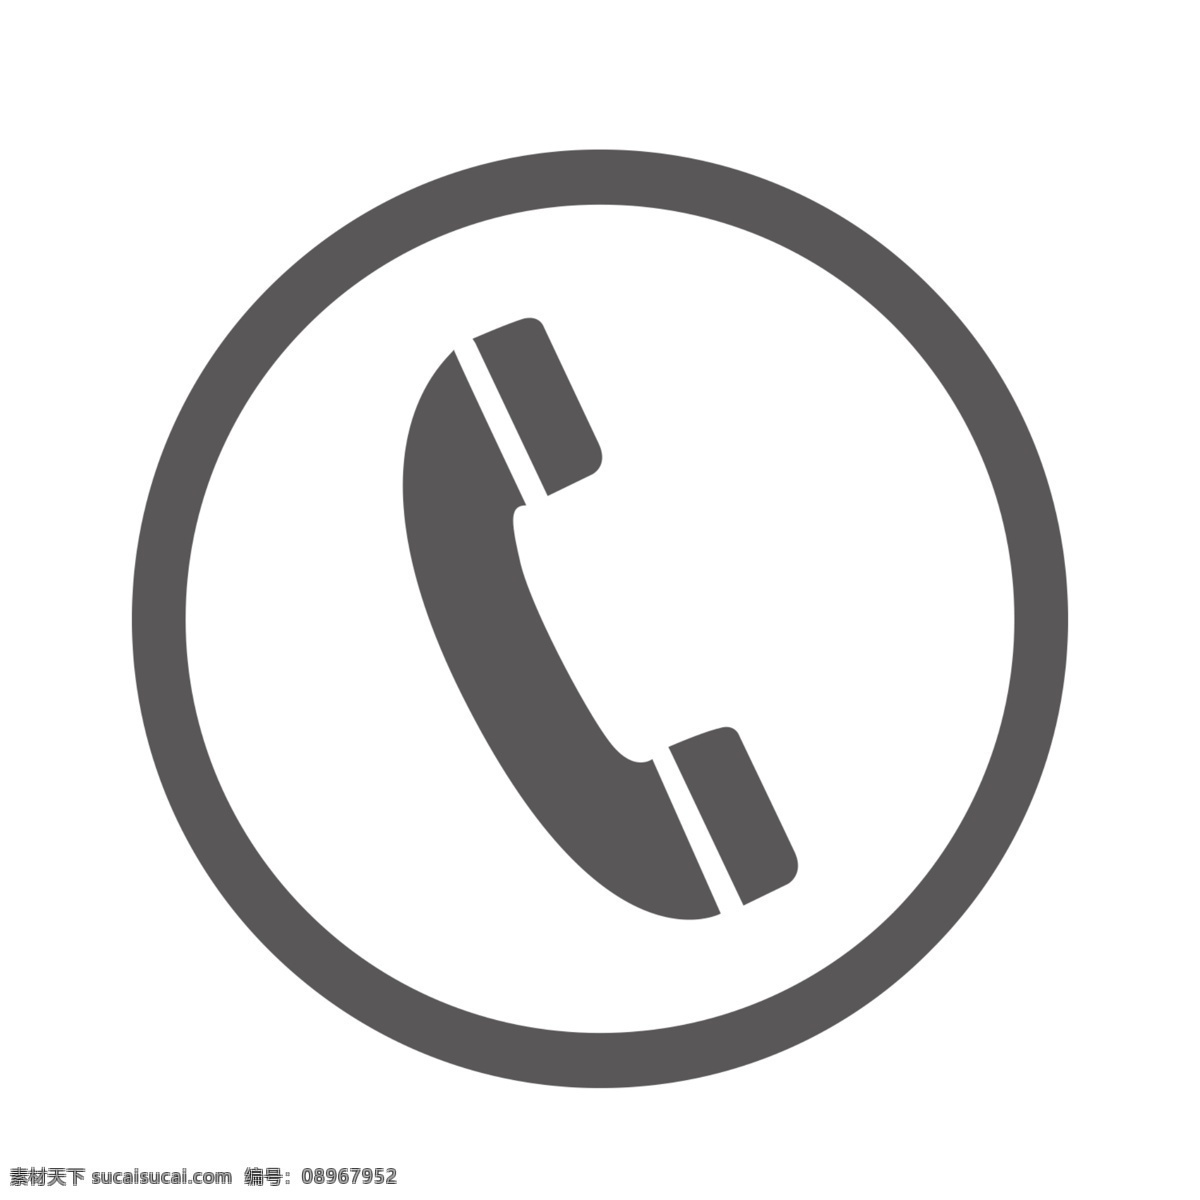 电话图标 电话 图标 电话素材 设计素材 常用素材